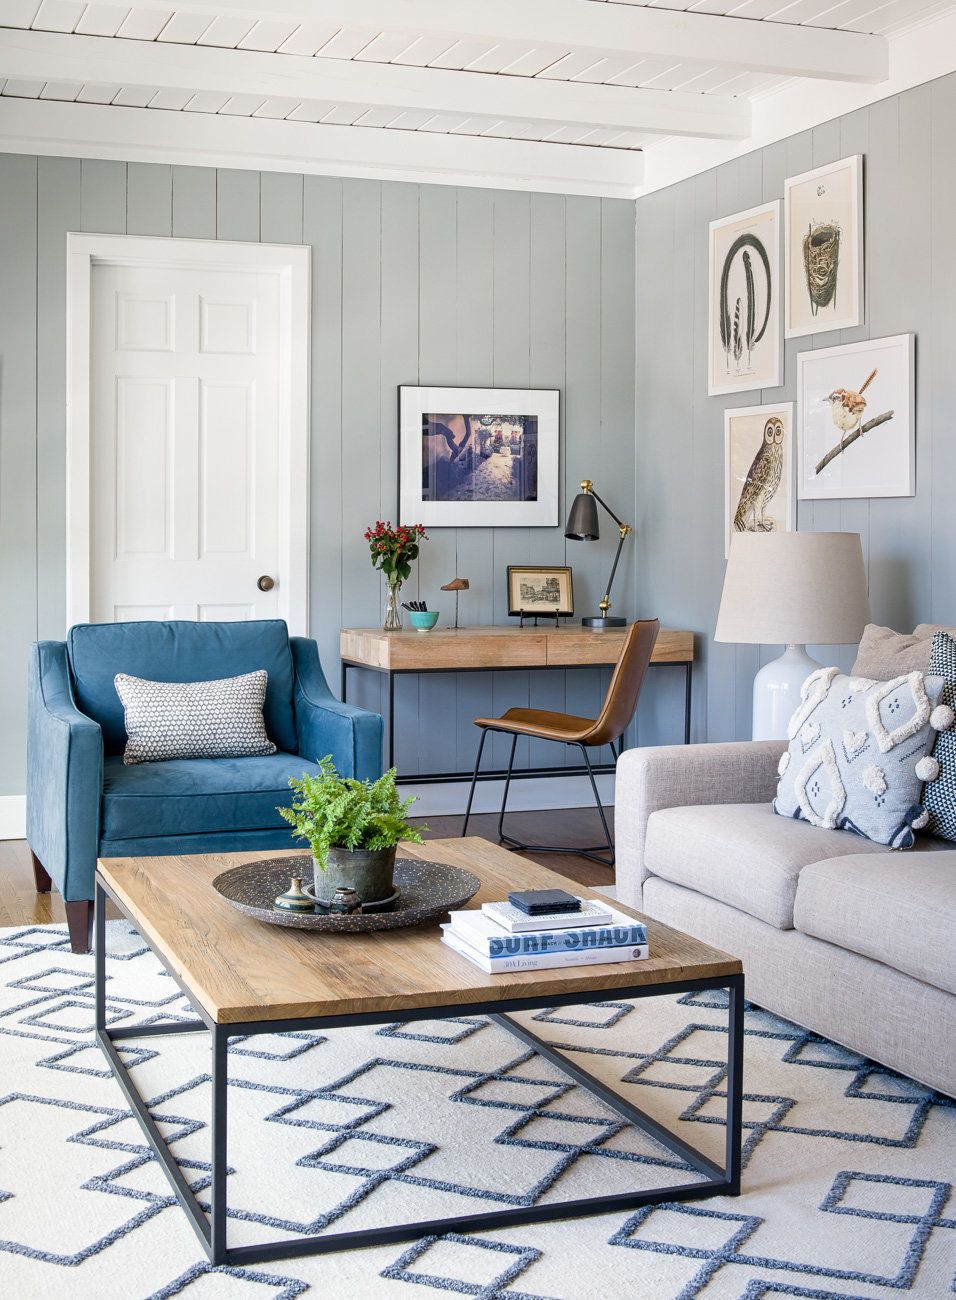 Inspiring design ideas for a blue sofa
  living room